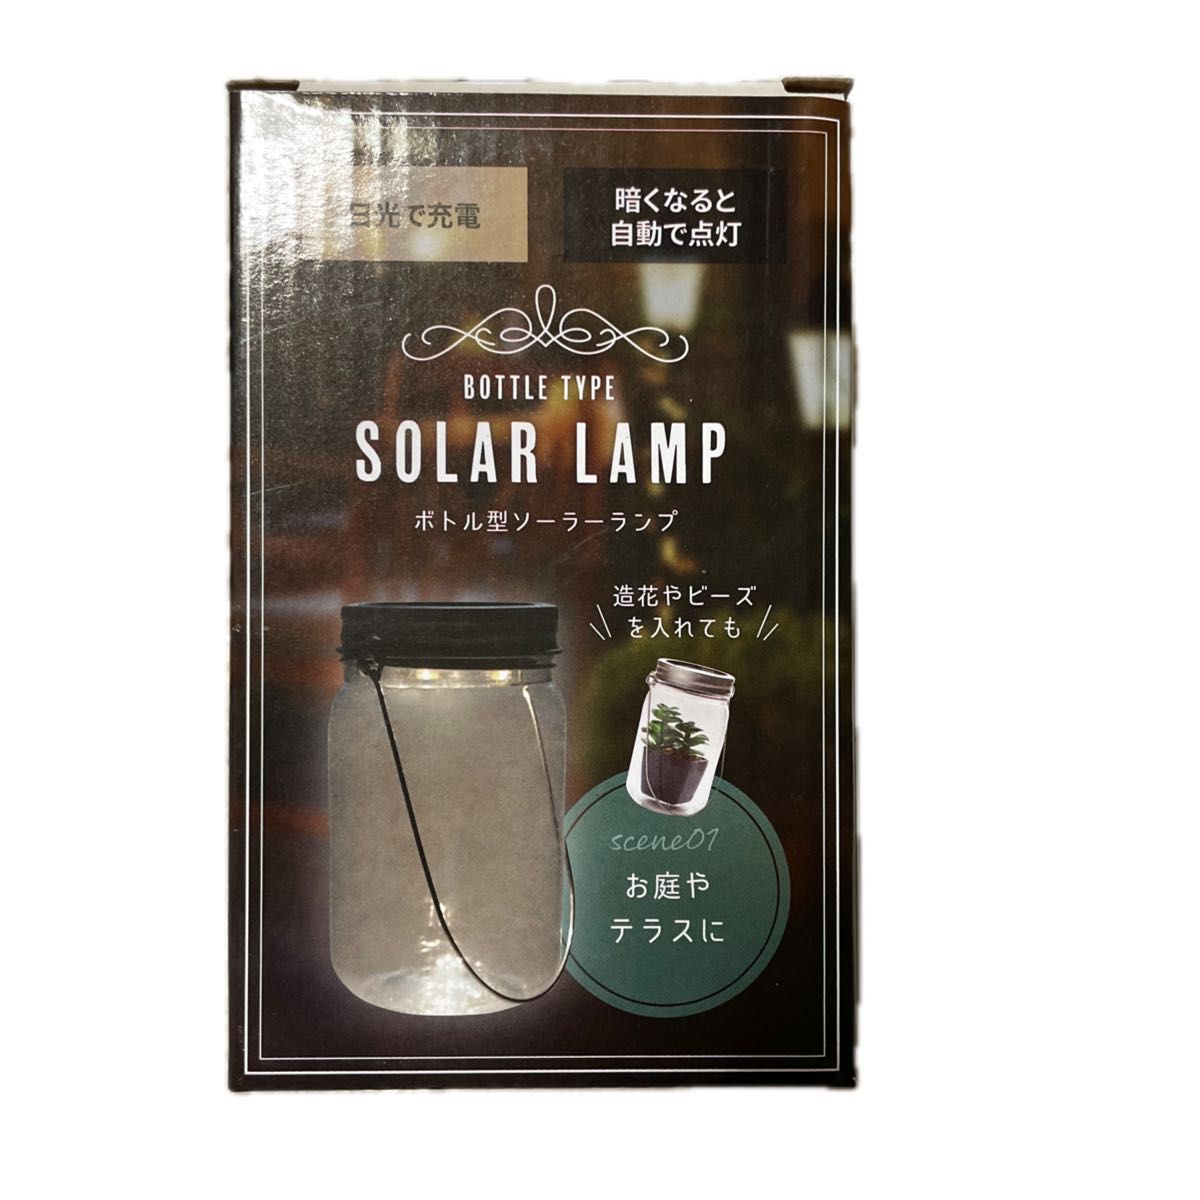 ボトル型 ソーラーランプ ソーラー充電 生活防水 太陽光 照明 キャンプ アウトドア 災害 緊急 非常用 ボトル型ソーラーランプ